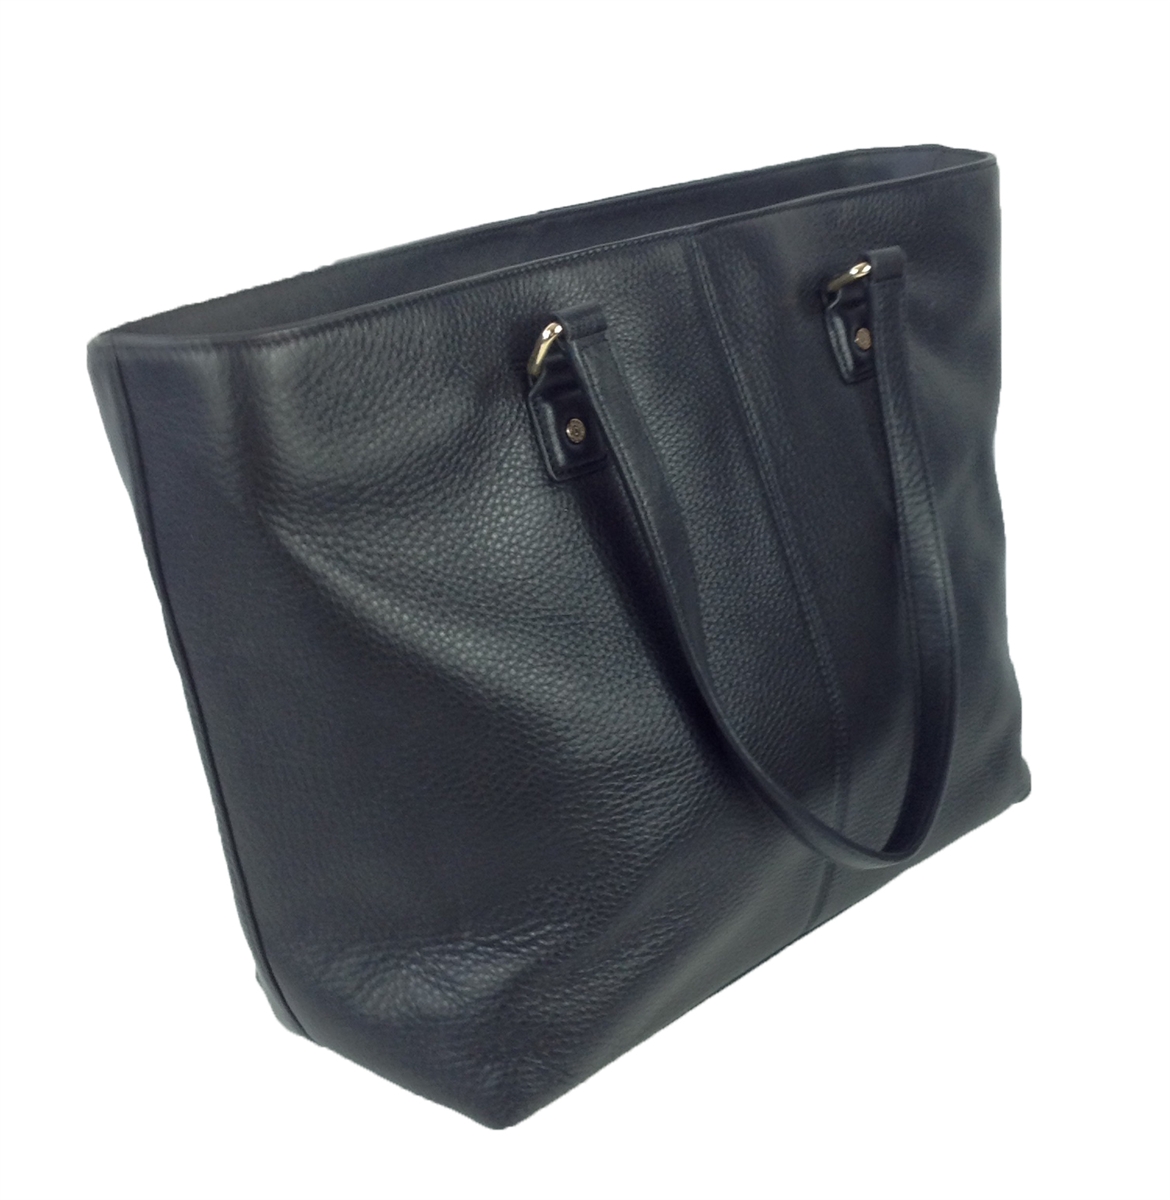 $348 DKNY Leather Sling Backpack Ego Bucket Bag Shoulder Purse Sac Black  Oxide